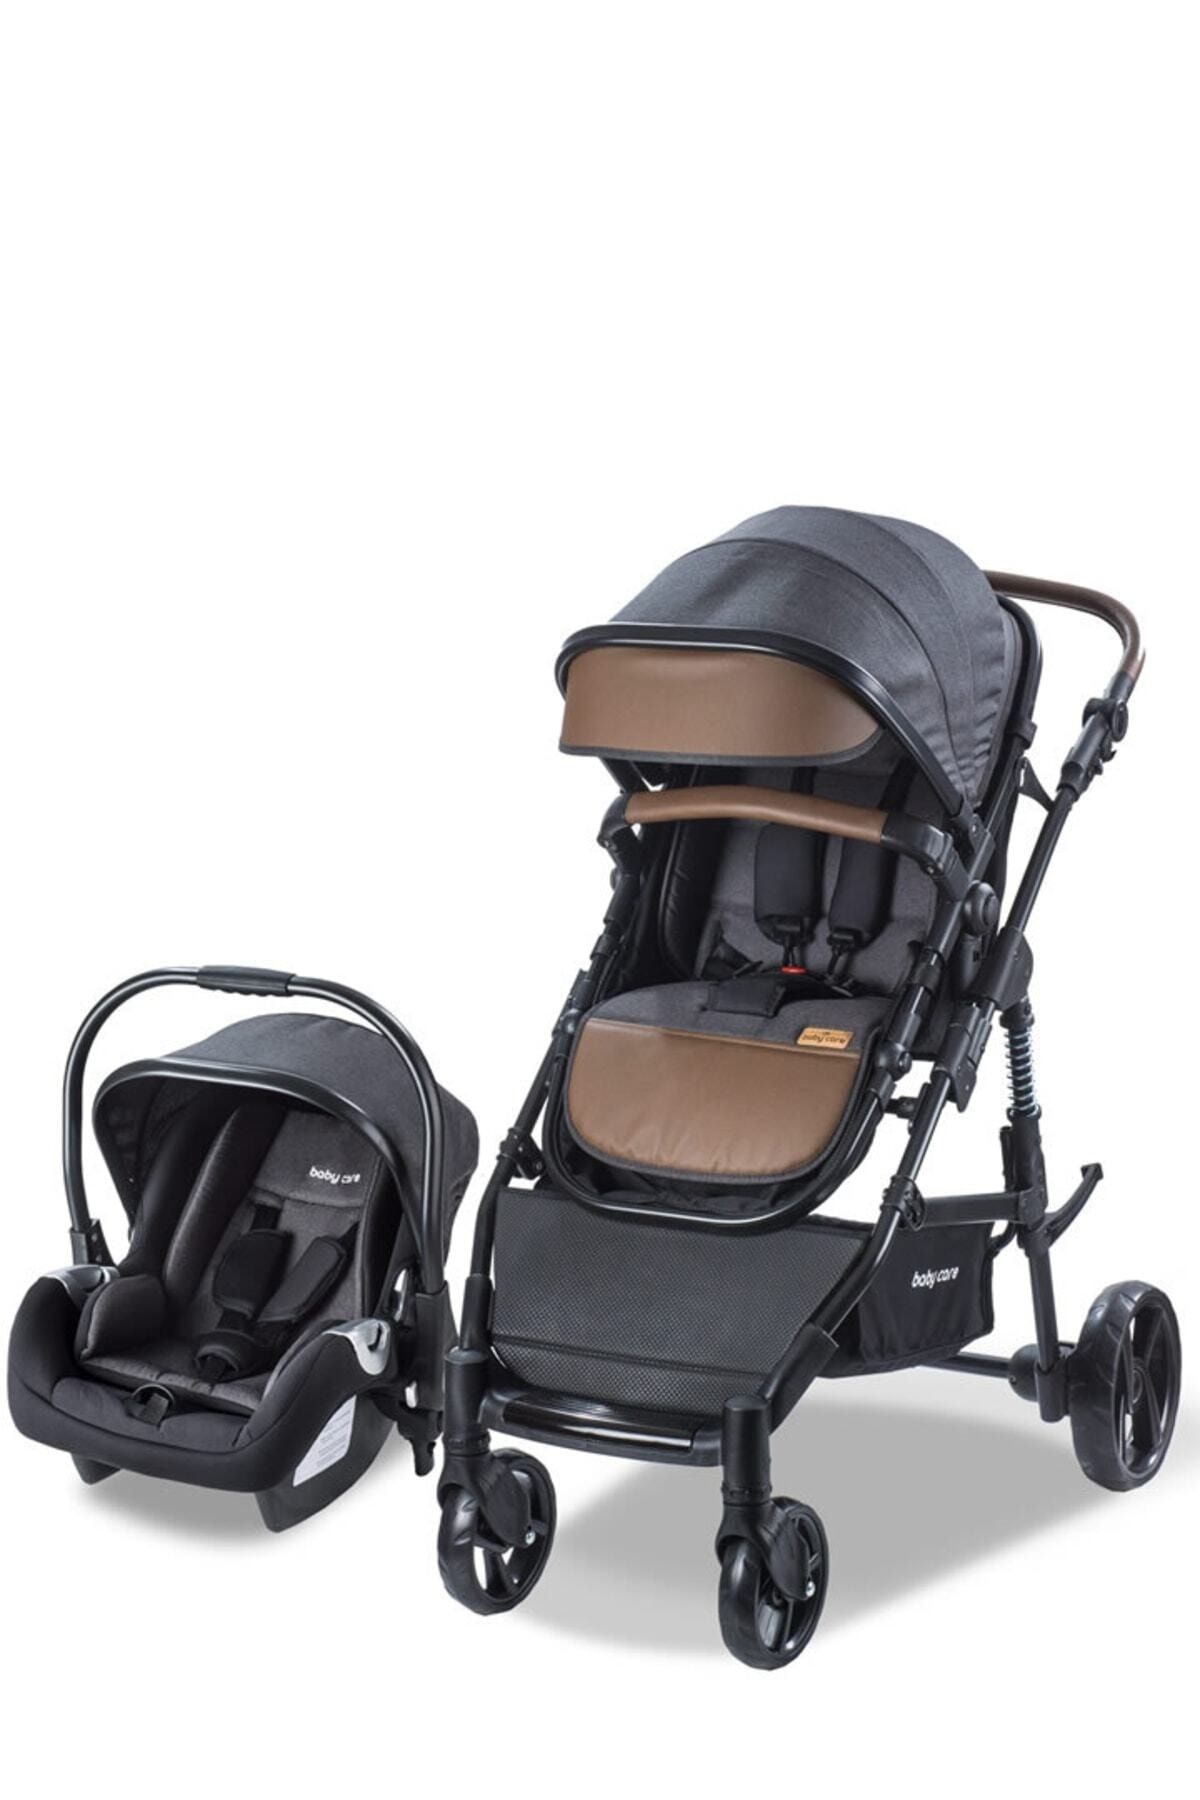 Baby Care 340 Bora Cross Travel Sistem Bebek Arabası Kahve Siyah